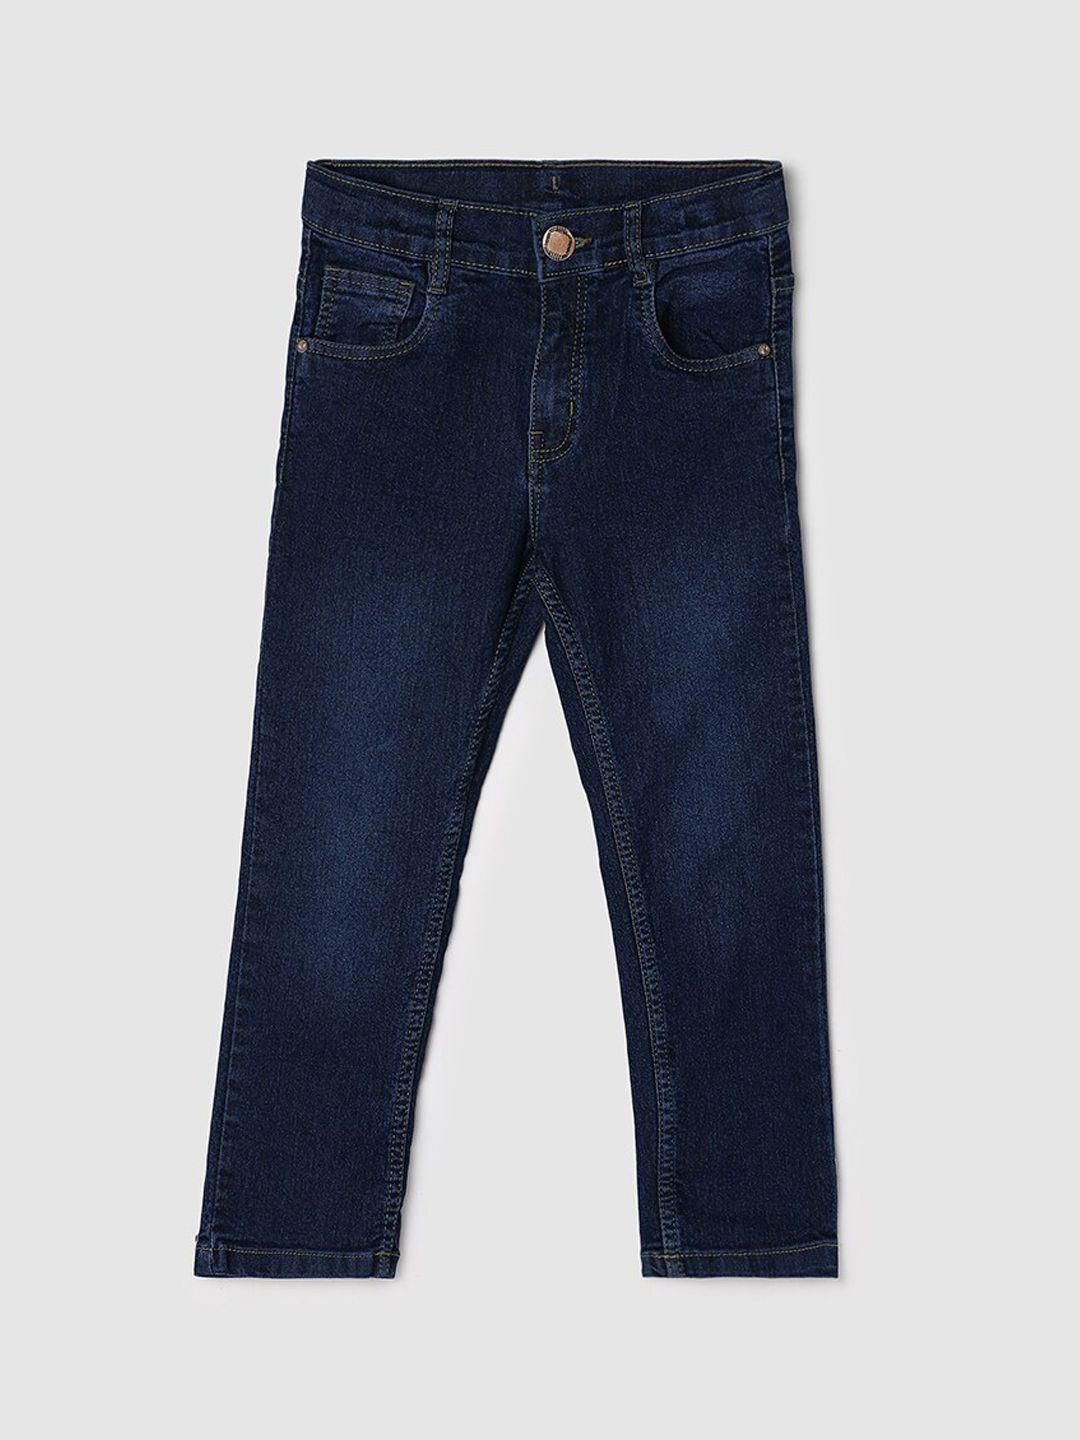 max boys light fade regular fit jeans